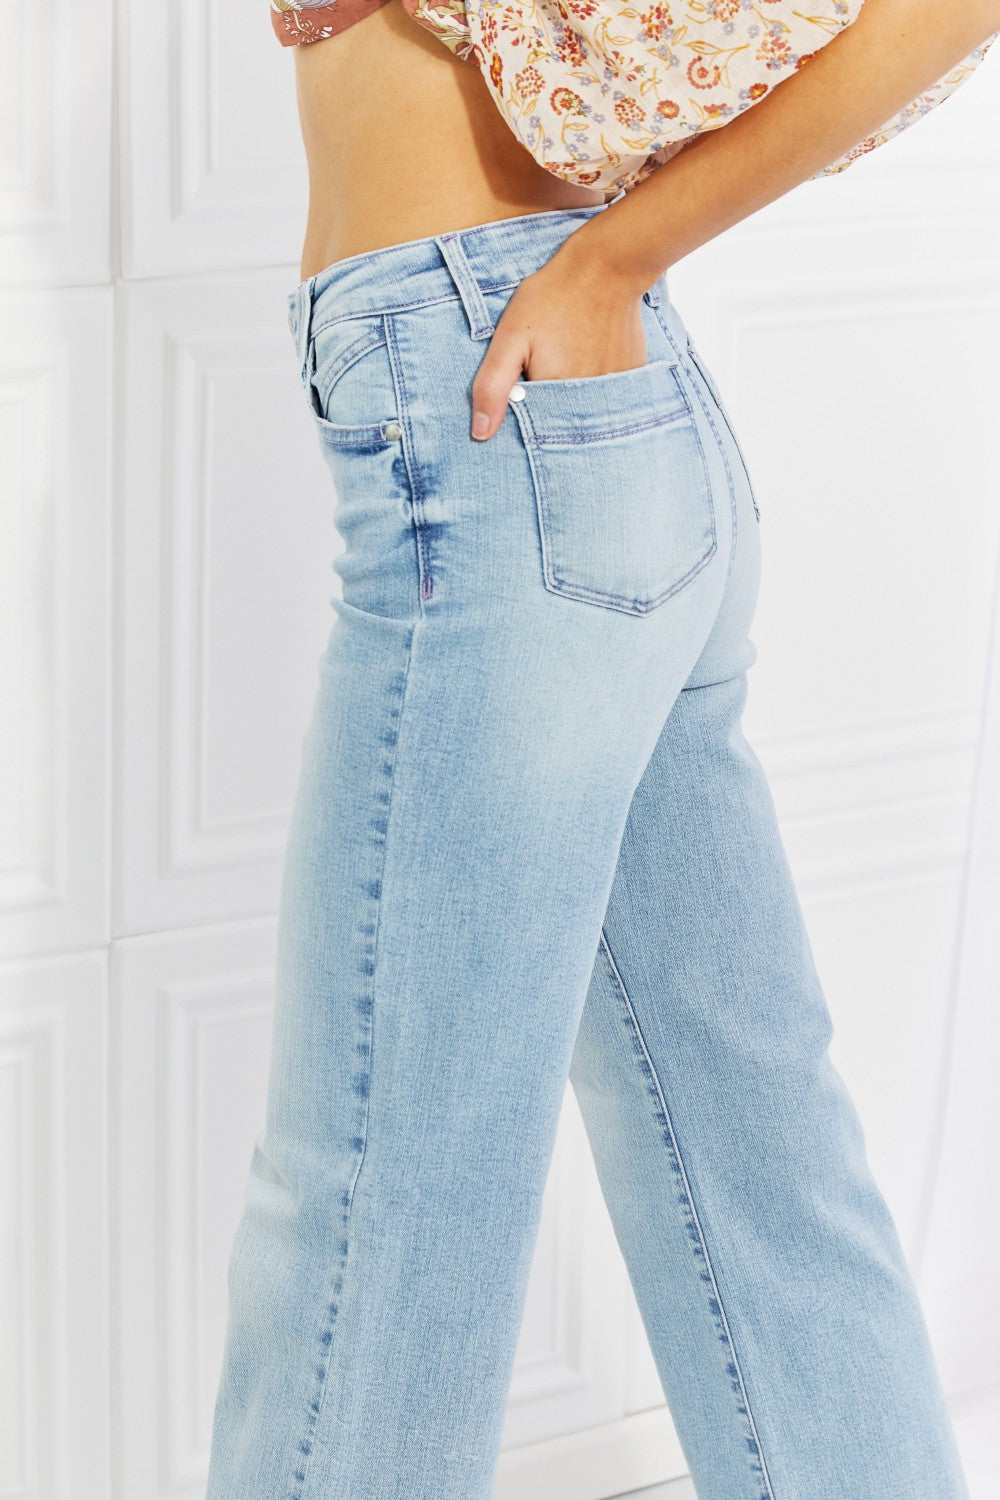 Judy Blue High Waist Wide Leg Jeans* - AnnRose Boutique